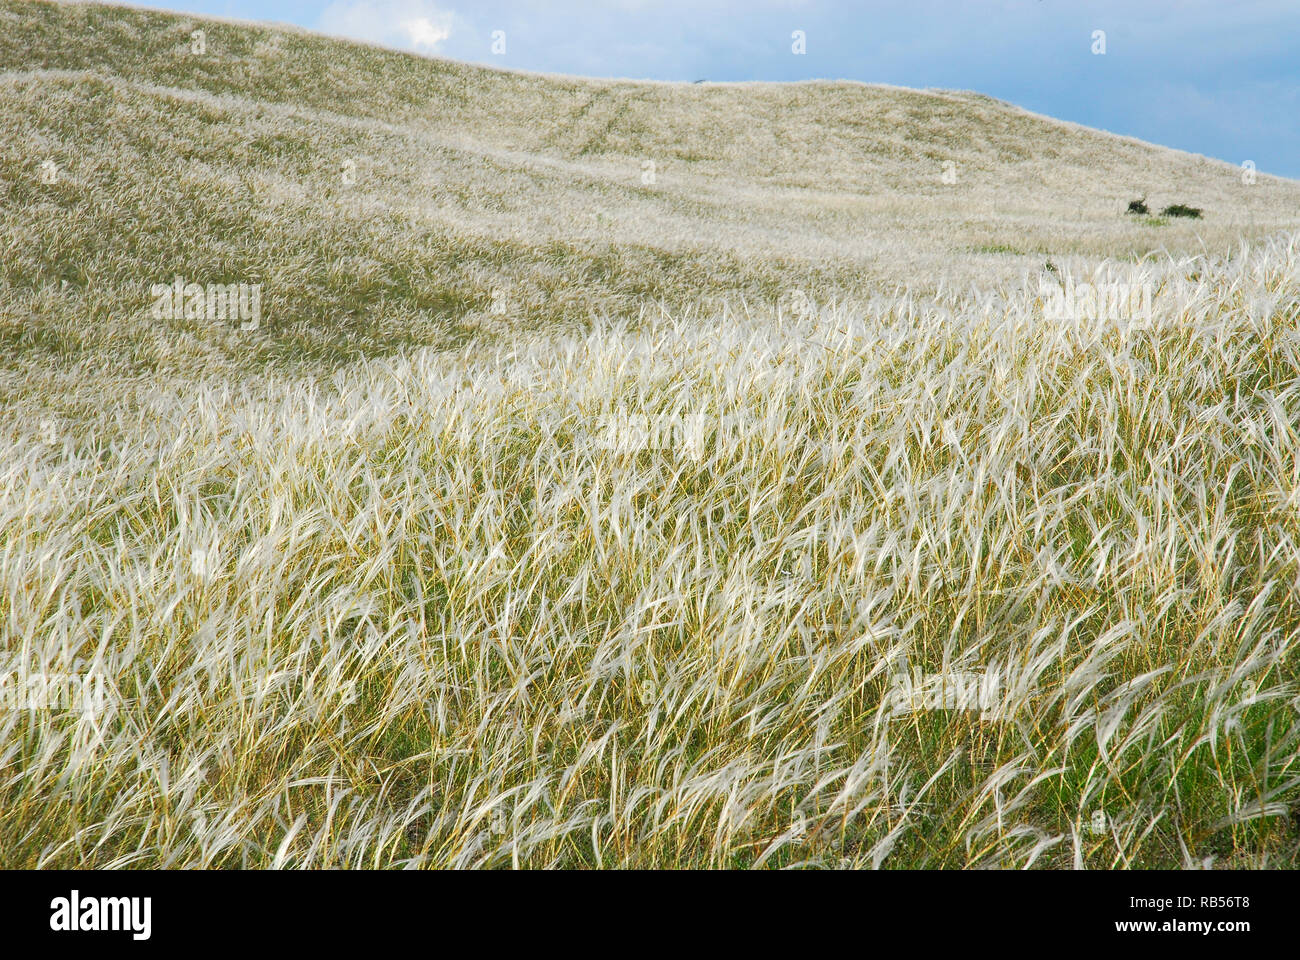 feather grass, needle grass, spear grass, Federgräser Pfriemengräser. Árvalányhajmező Veszprém mellett Magyarországon. Stipa Stock Photo